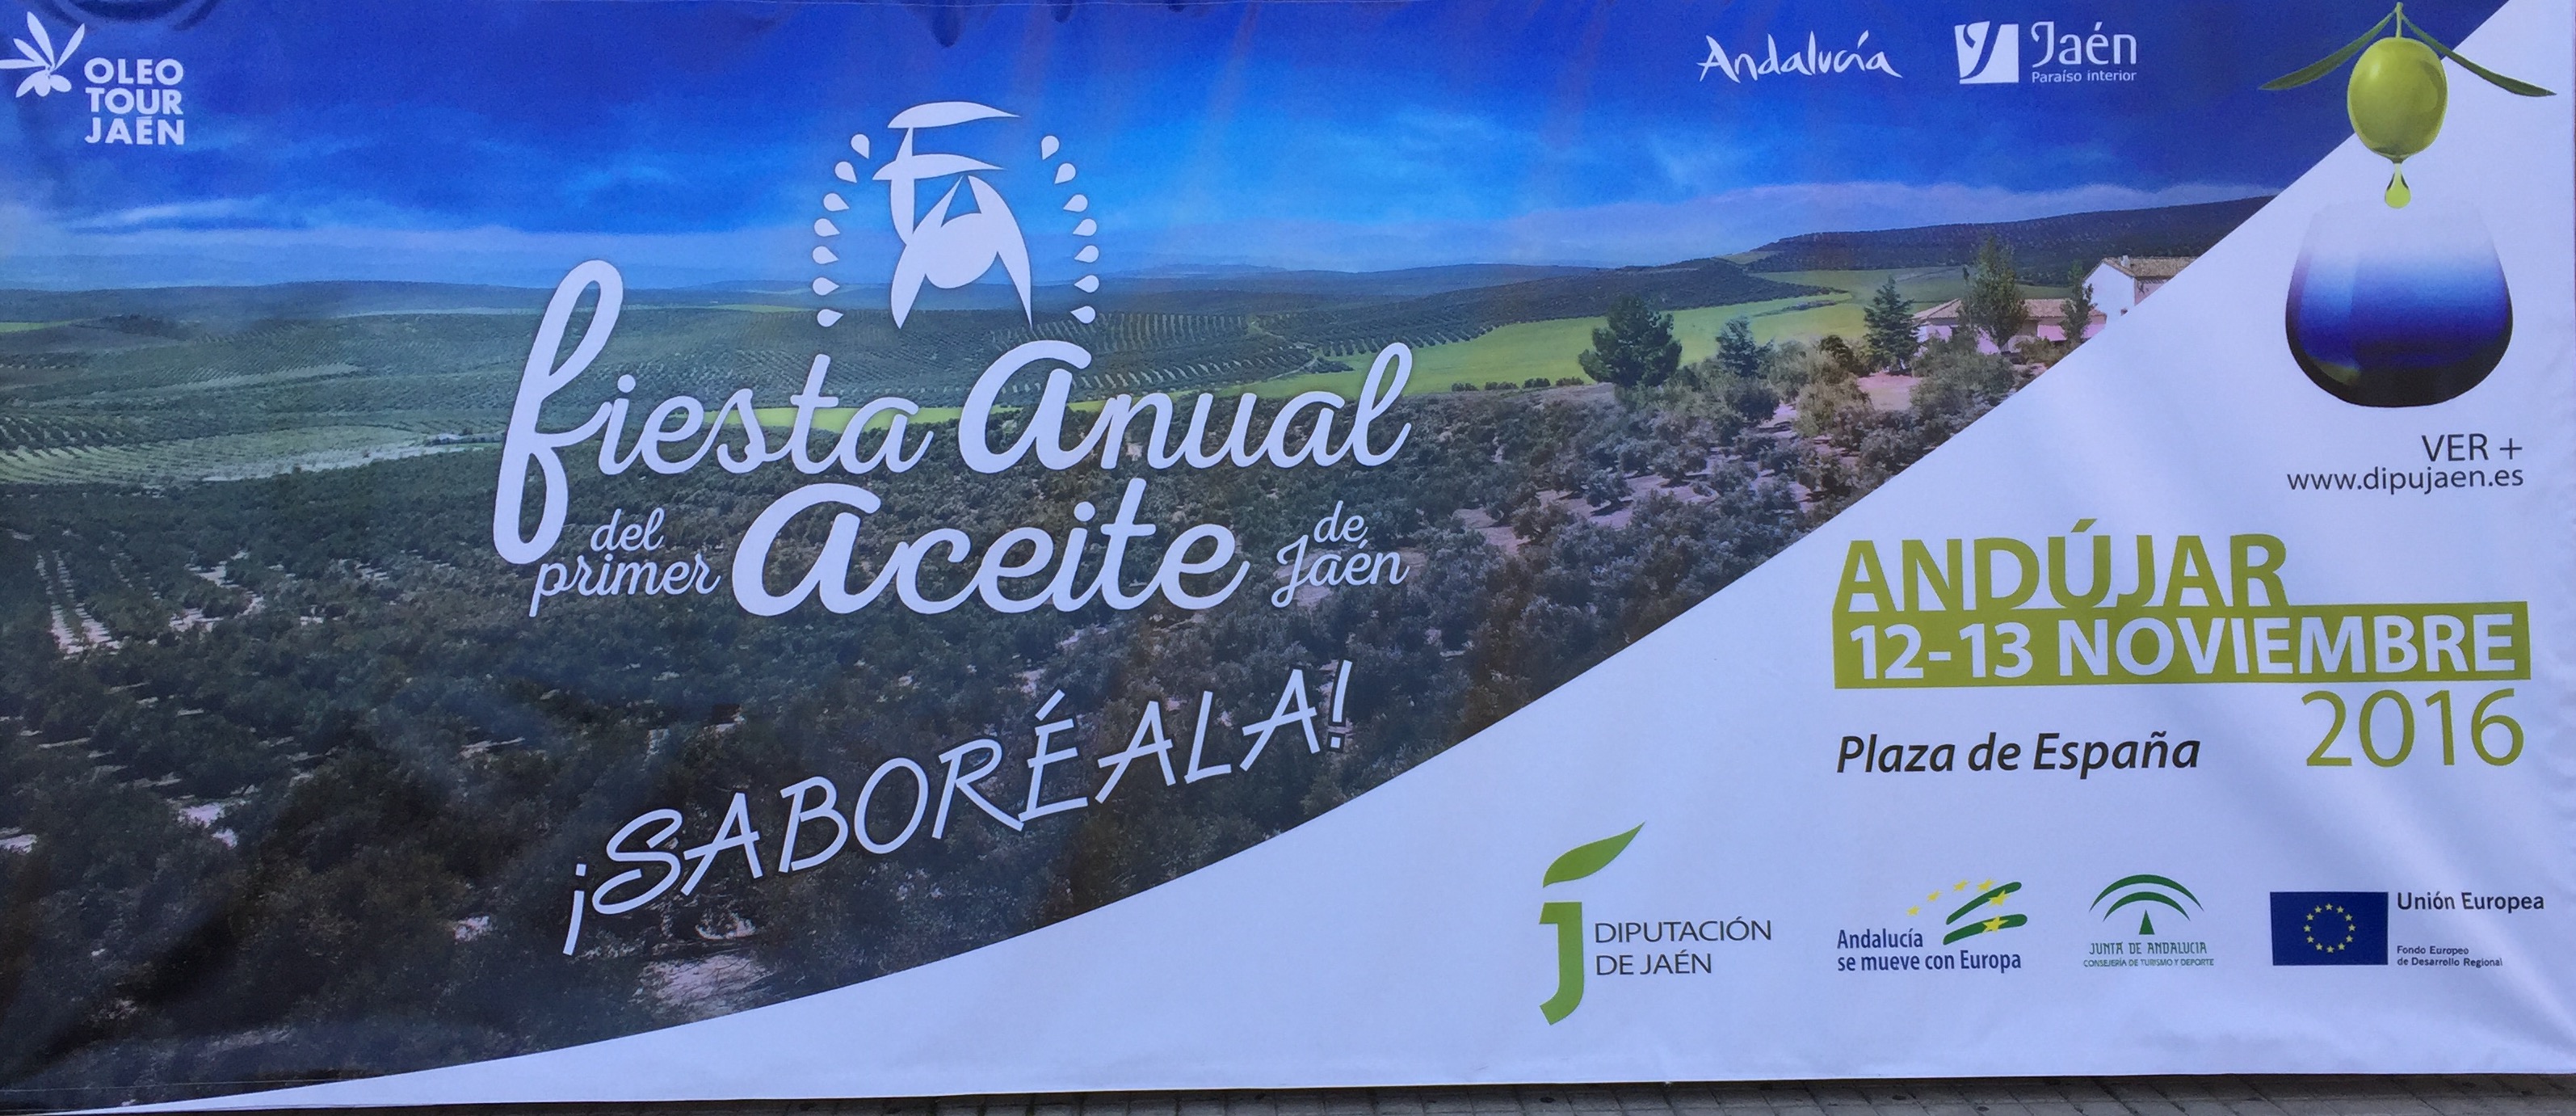 Fiesta Anual del primer Aceite de Jaén